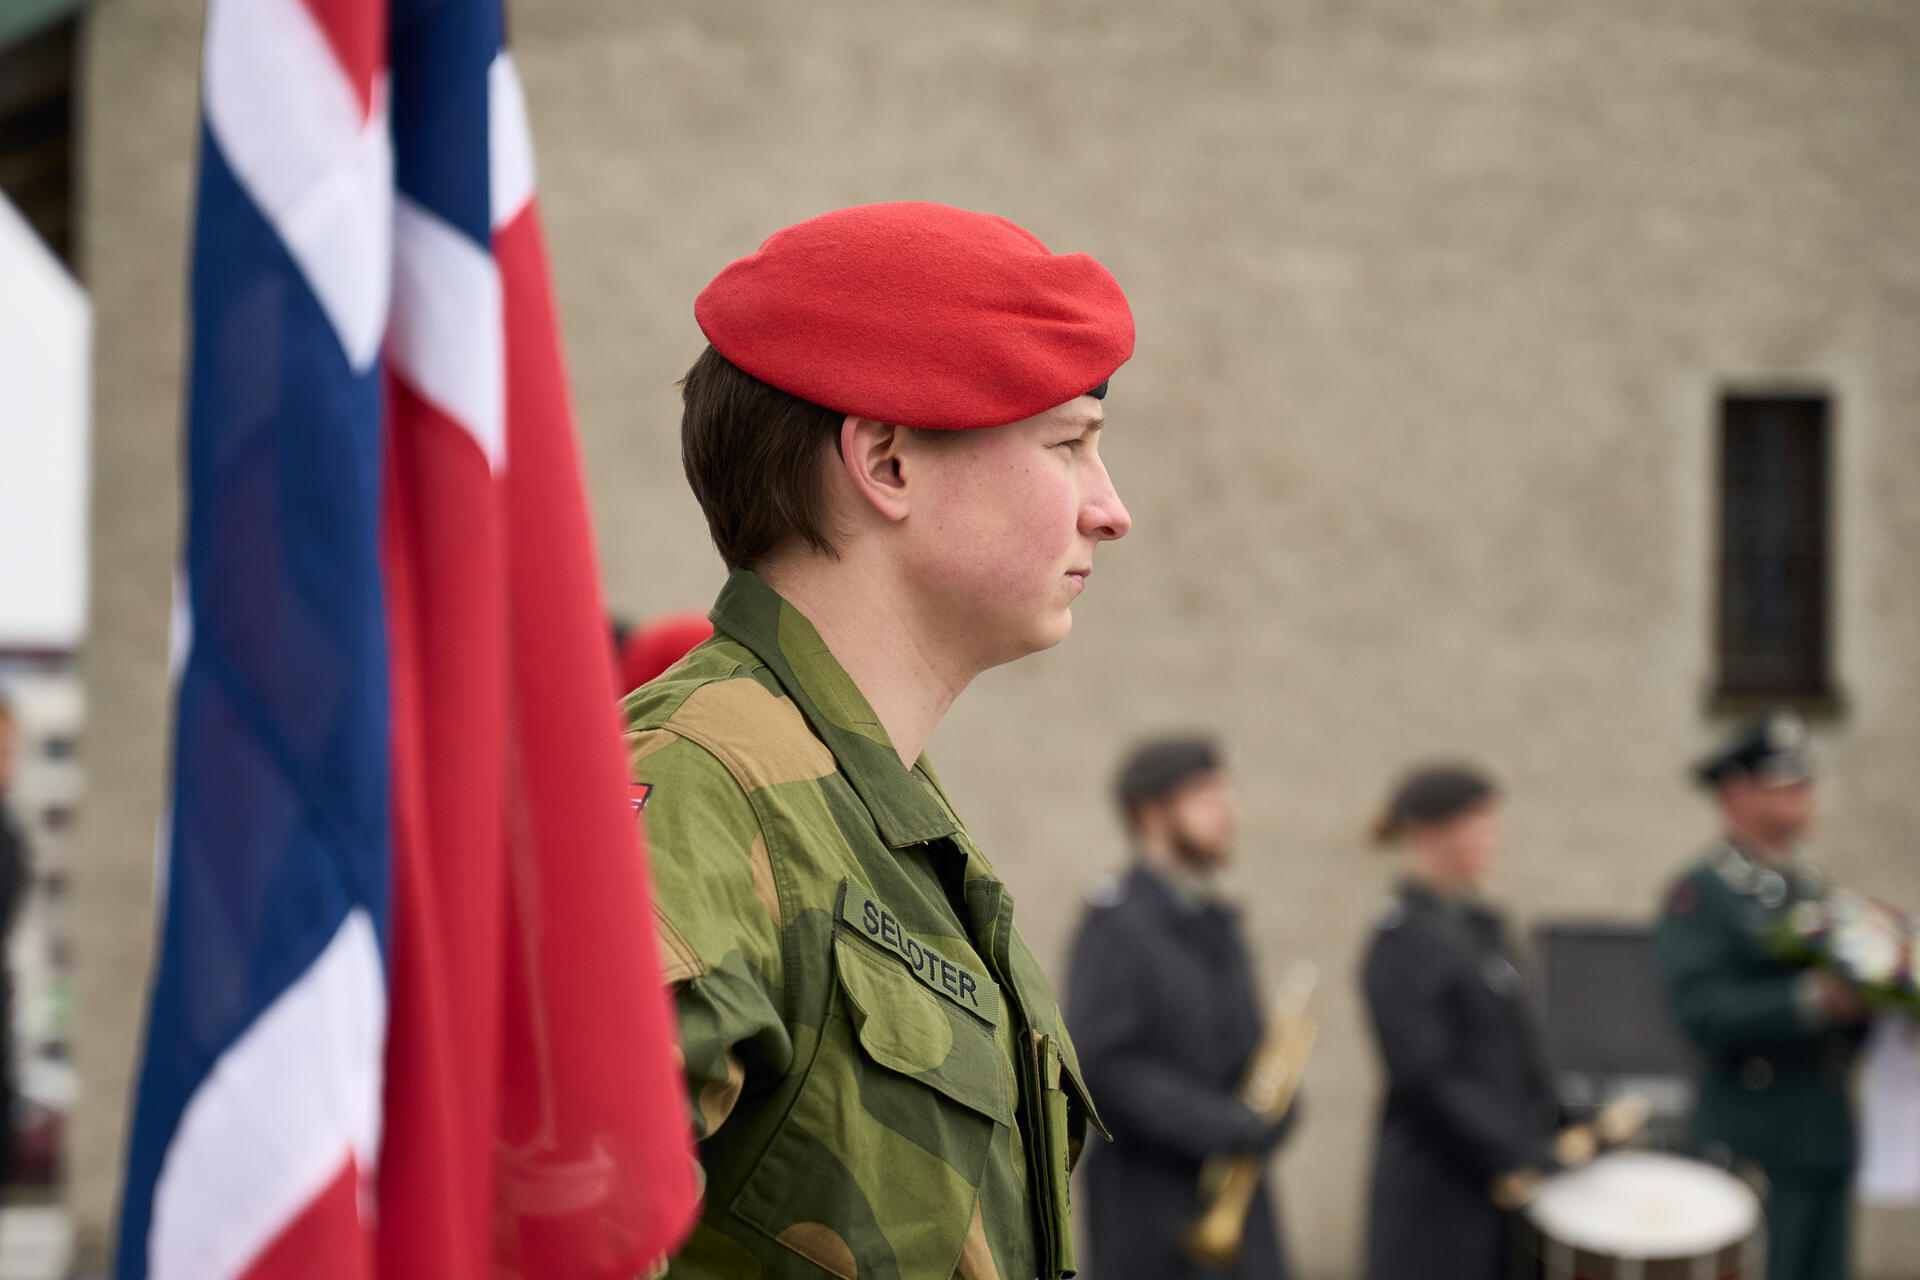 Soldat utenfor domkirken står og holder ett flagg